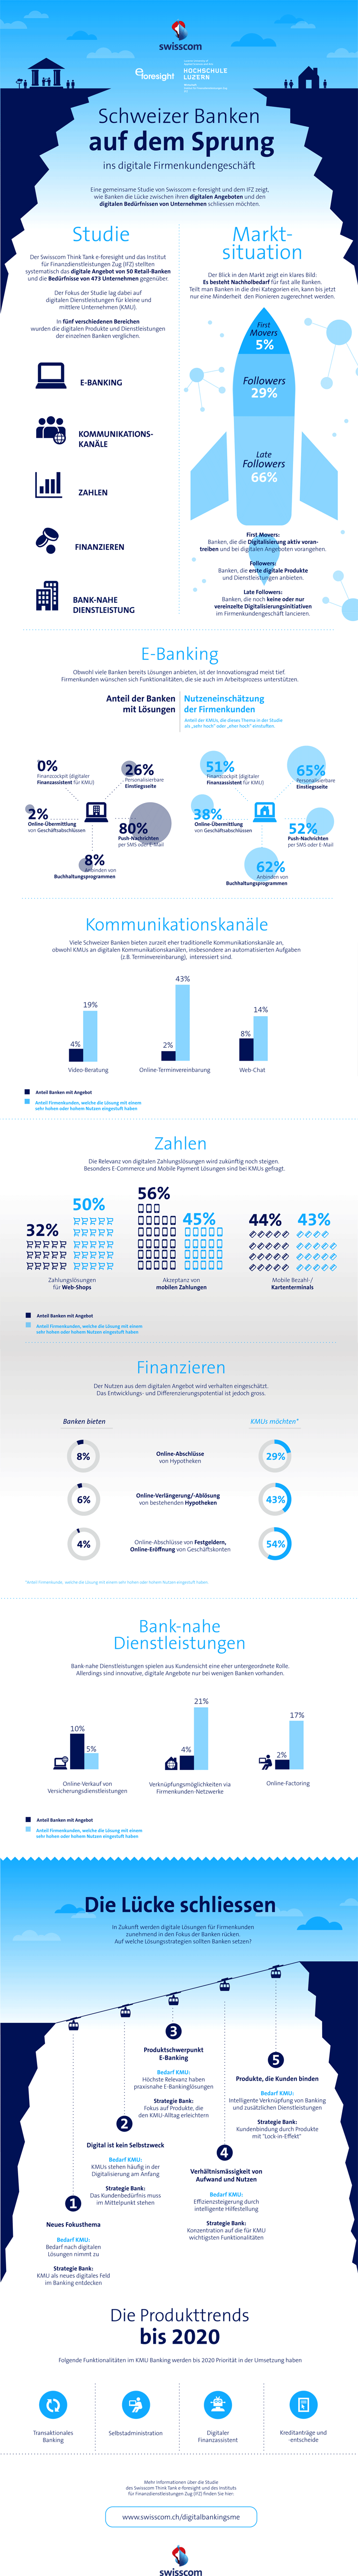 Infografik zum digitalen Firmenkundengeschäft in der Schweiz